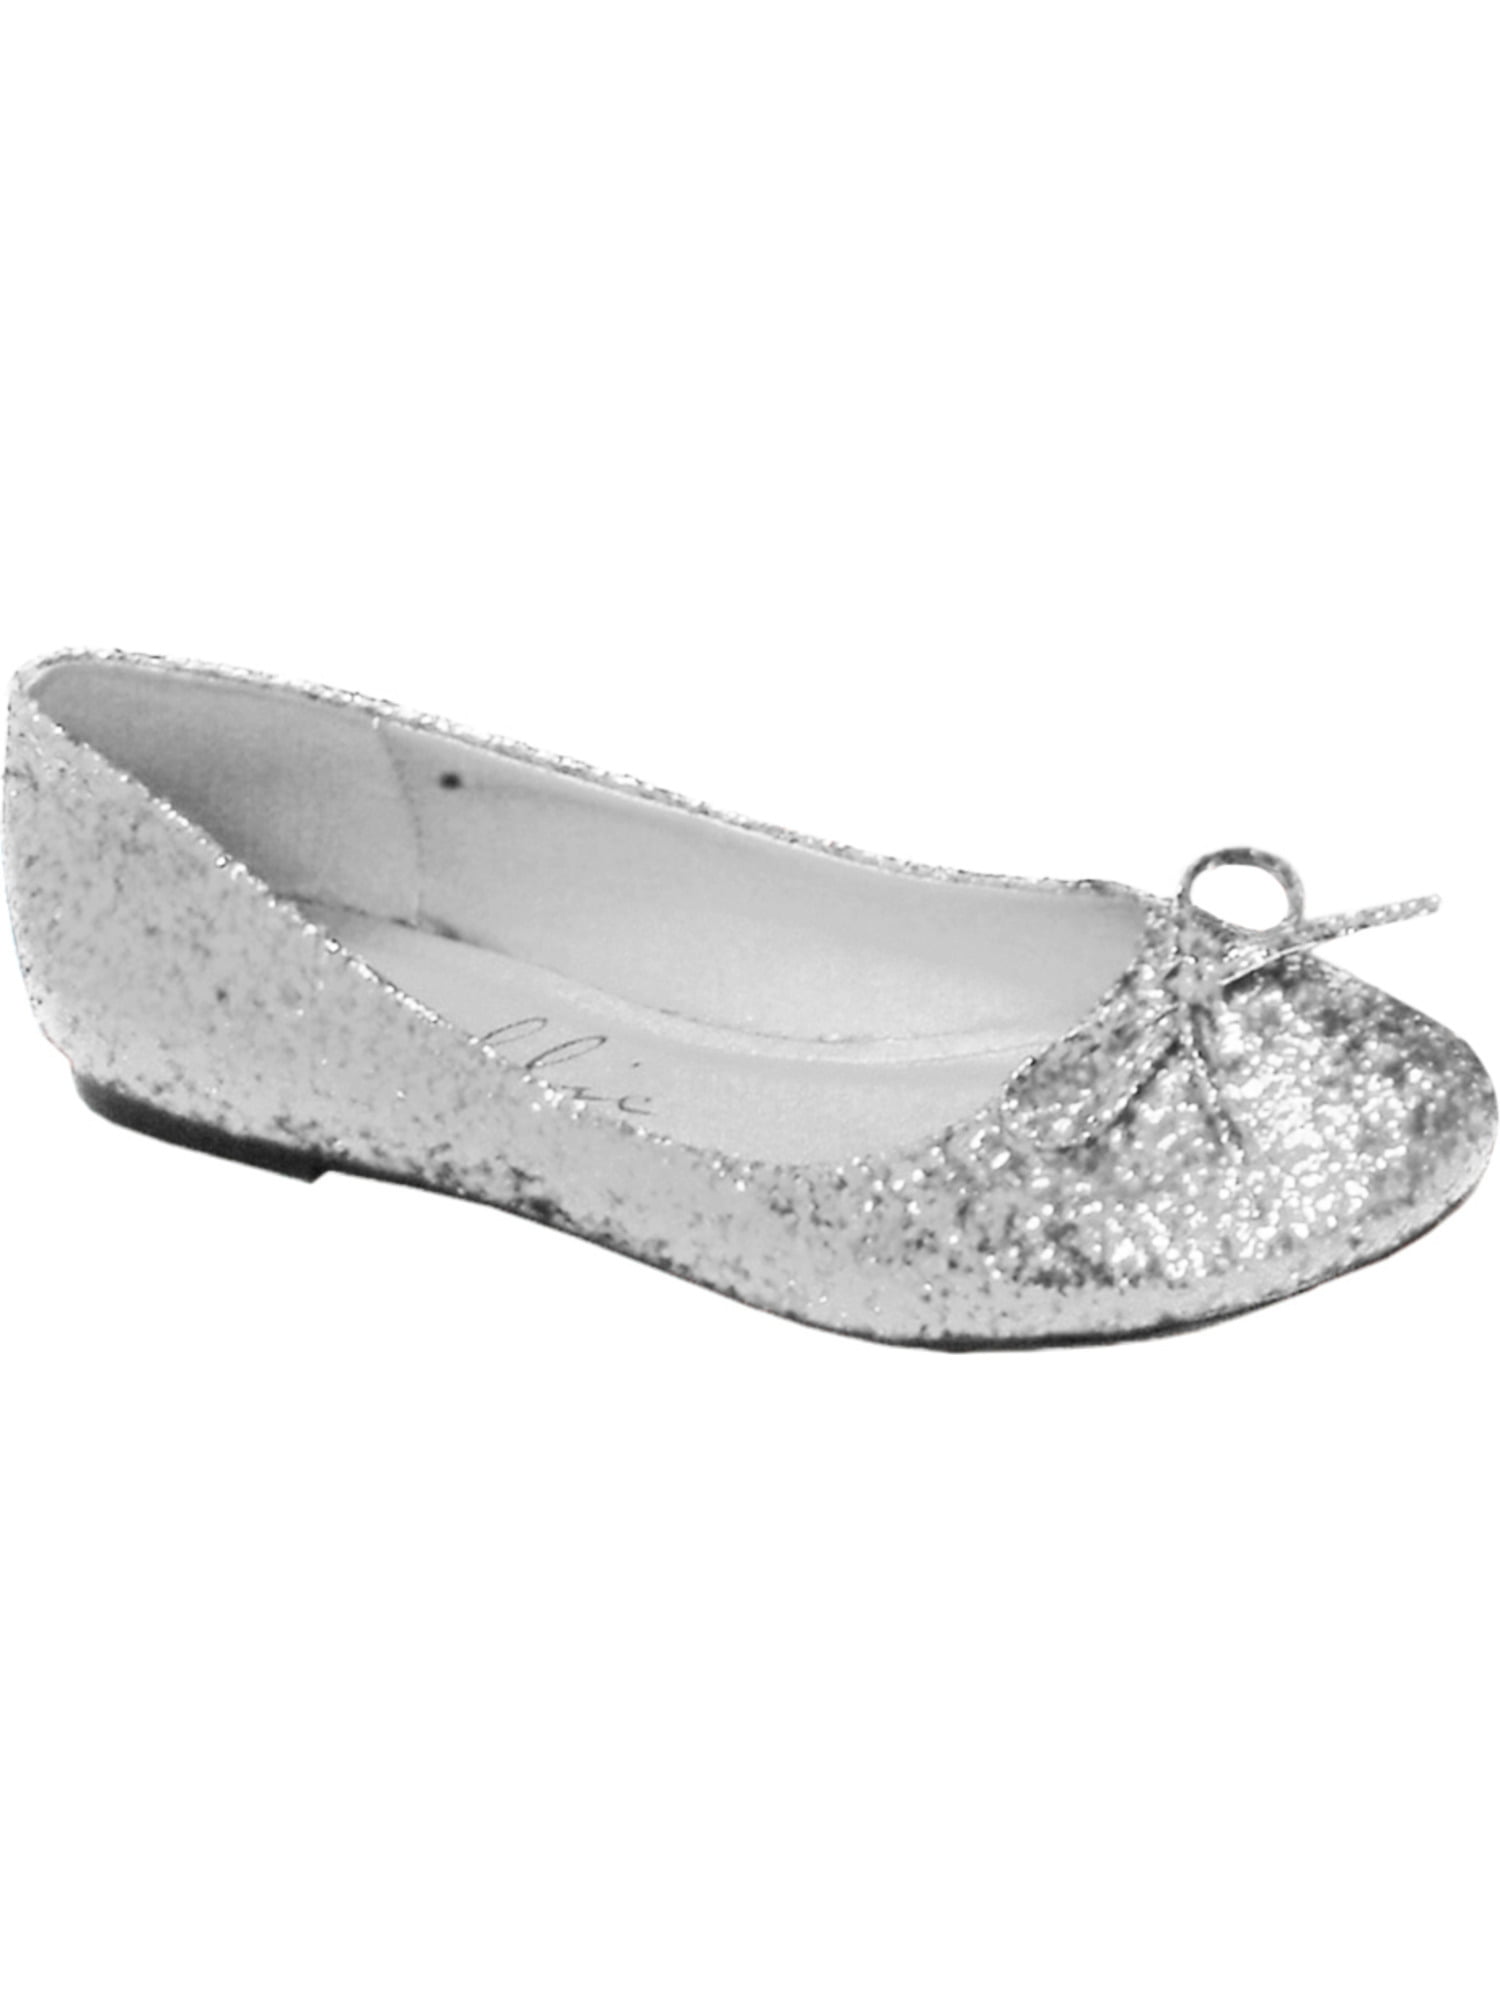 silver glitter ballet flats womens